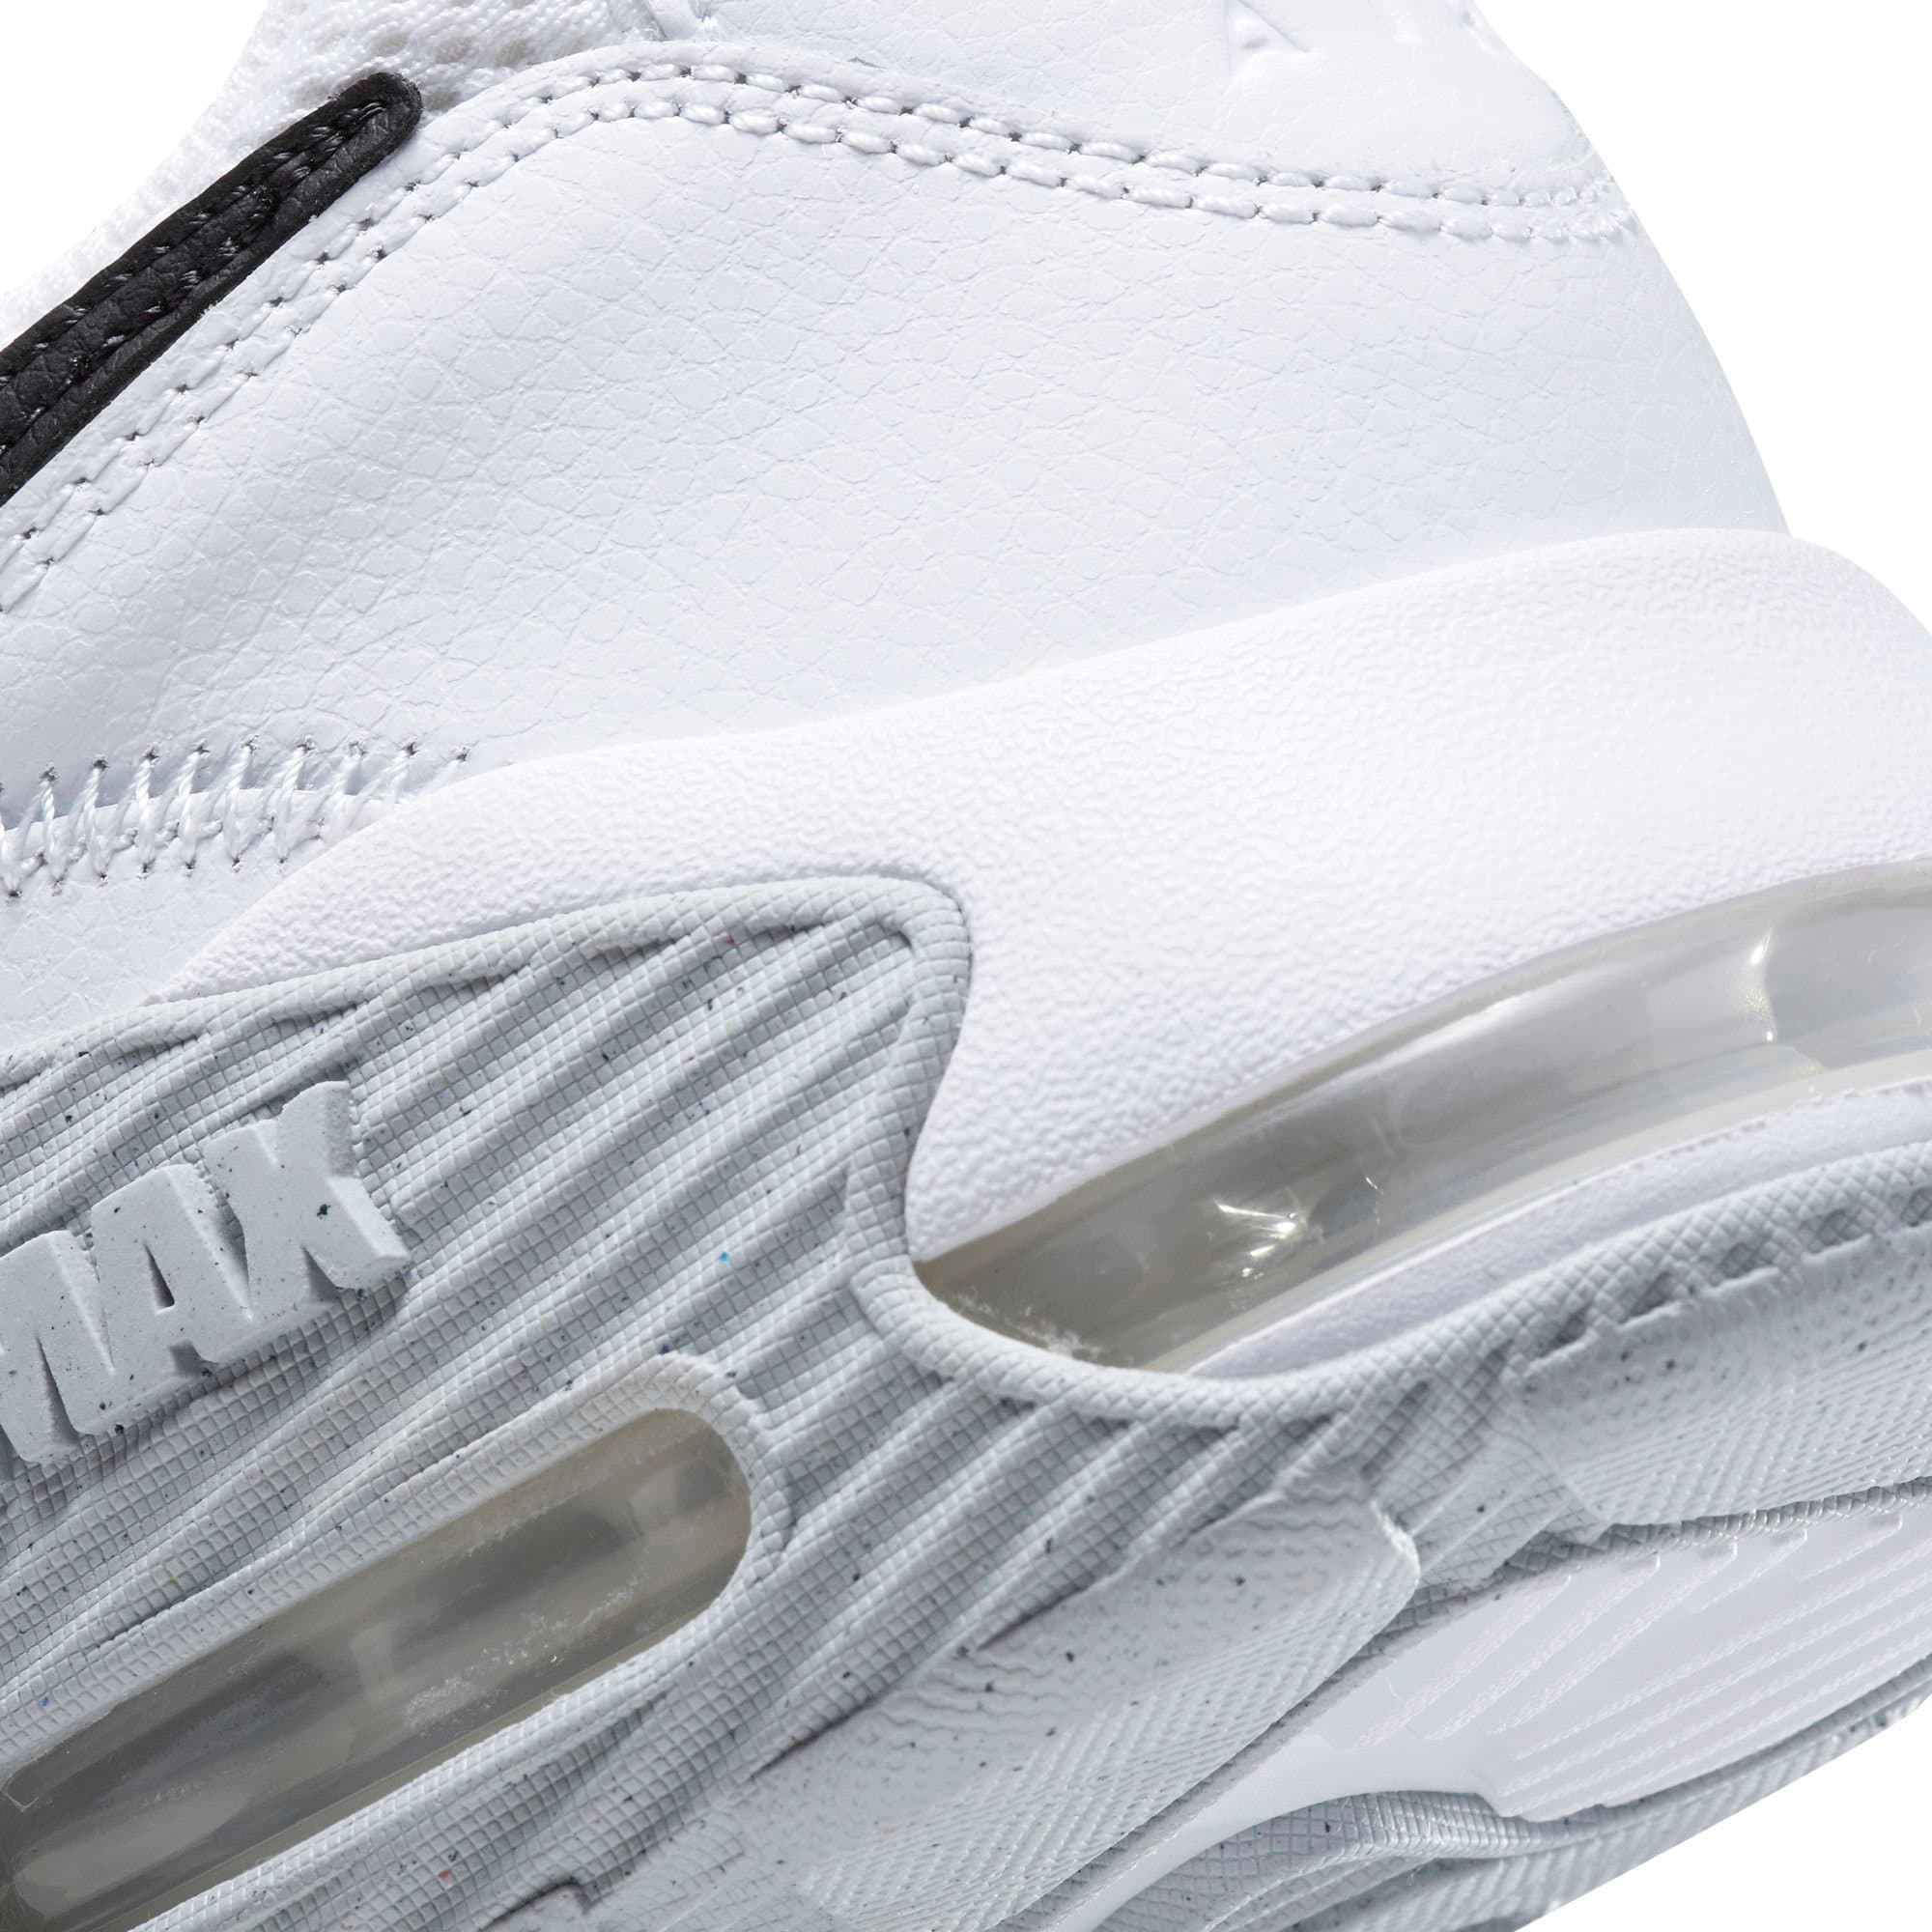 Nike Air Max Excee Erkek Beyaz Sneaker Ayakkabı (CD4165-100)